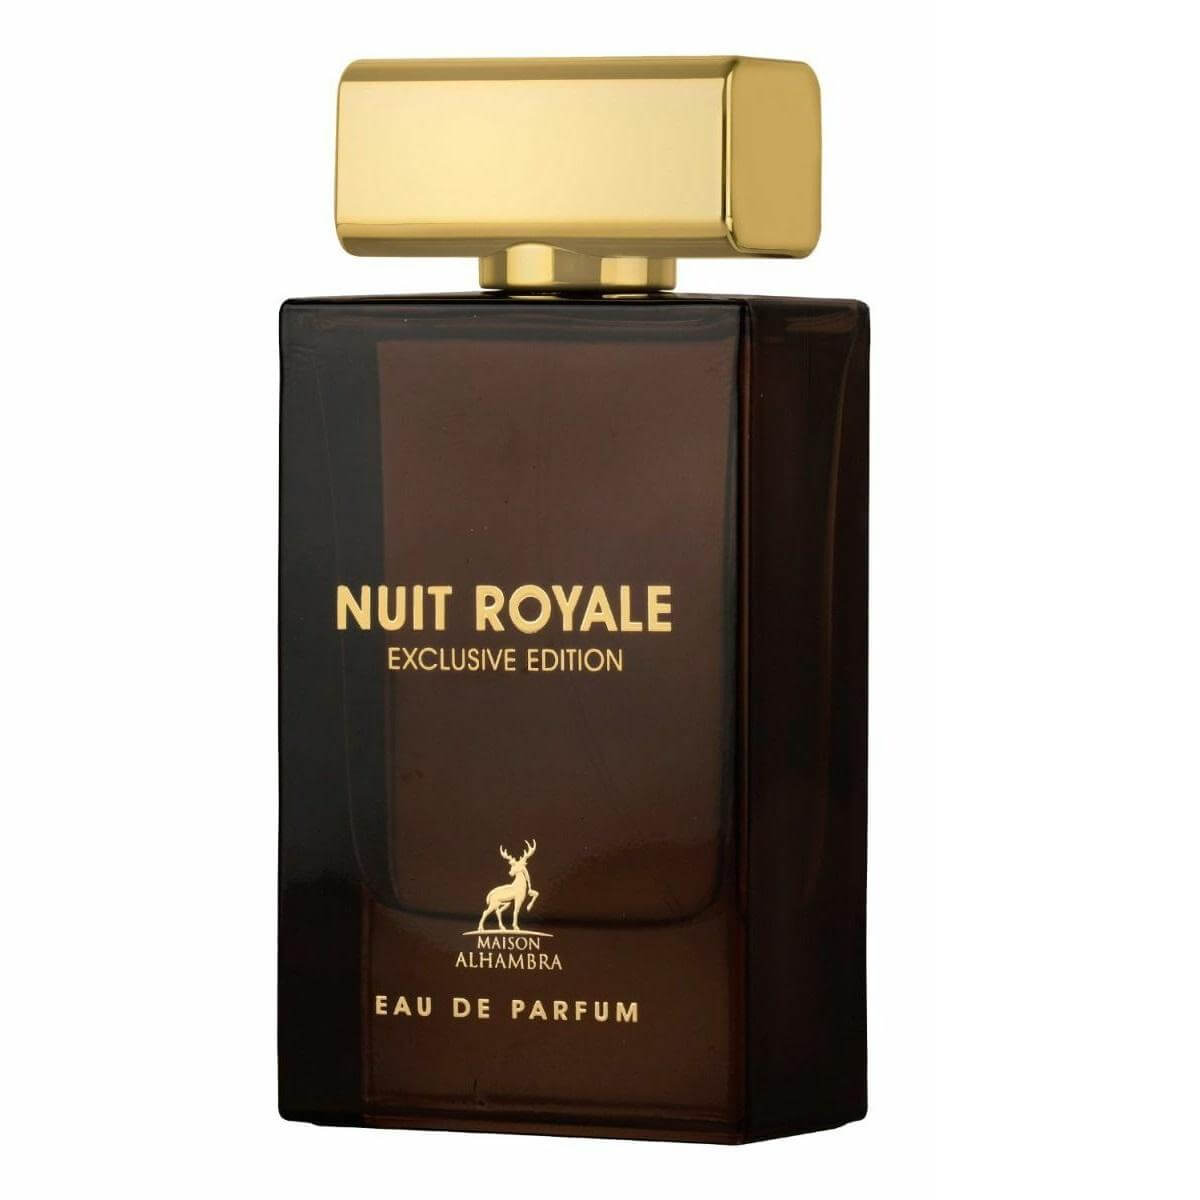 Nuit Royale Exclusive Edition Perfume / Eau De Parfum By Maison Alhambra / Lattafa 